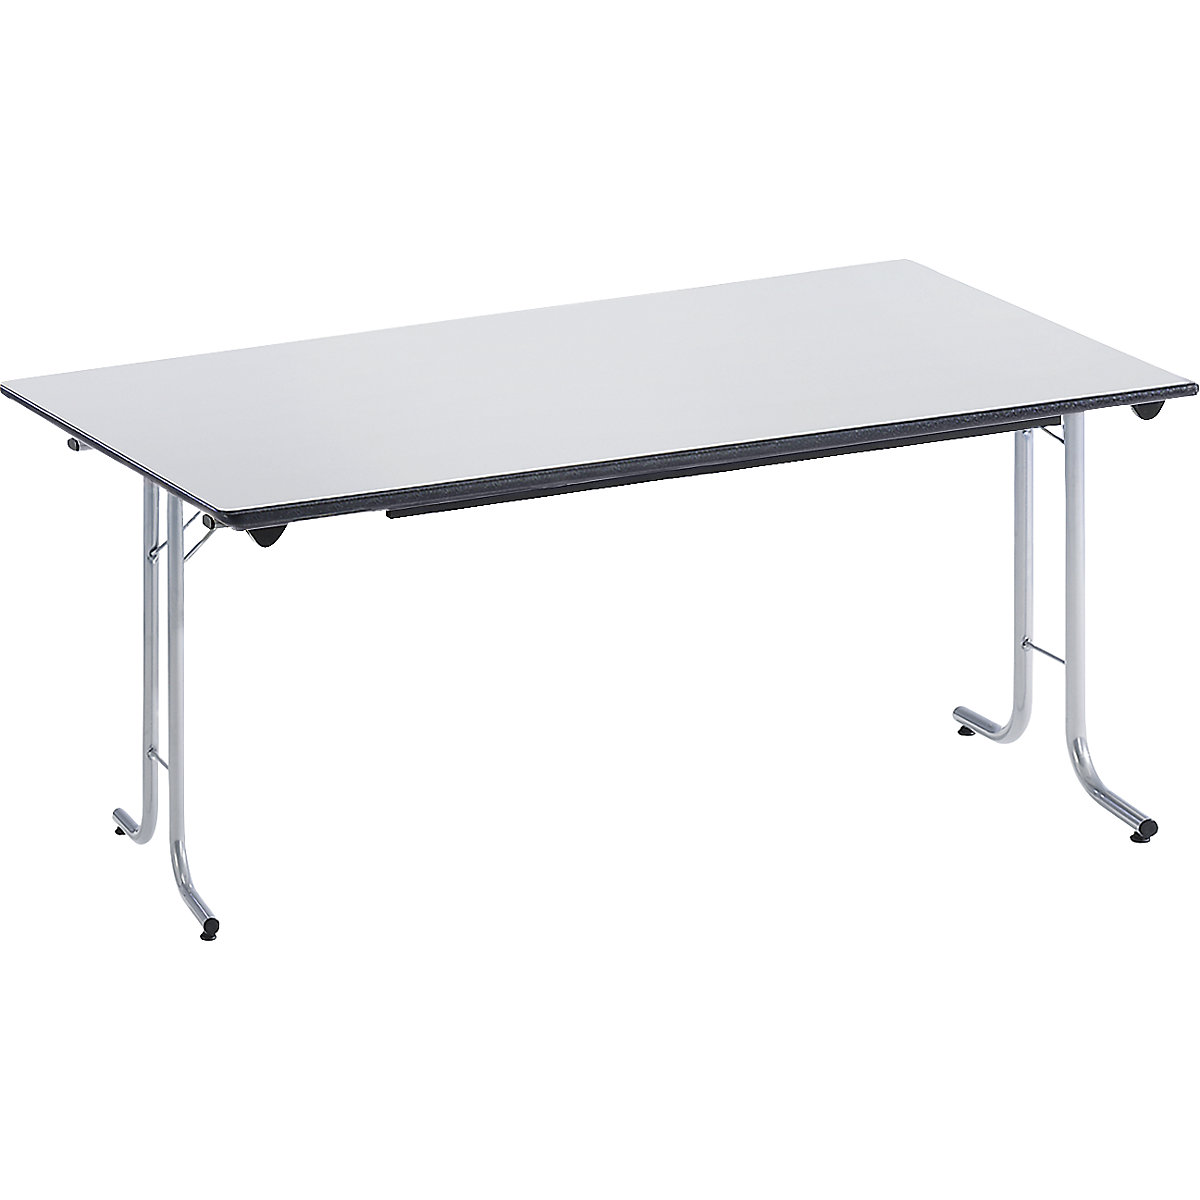 Mesa plegable, con bordes redondeados, armazón de tubo redondo, tablero rectangular, 1400 x 700 mm, armazón en color aluminio, tablero gris luminoso-5